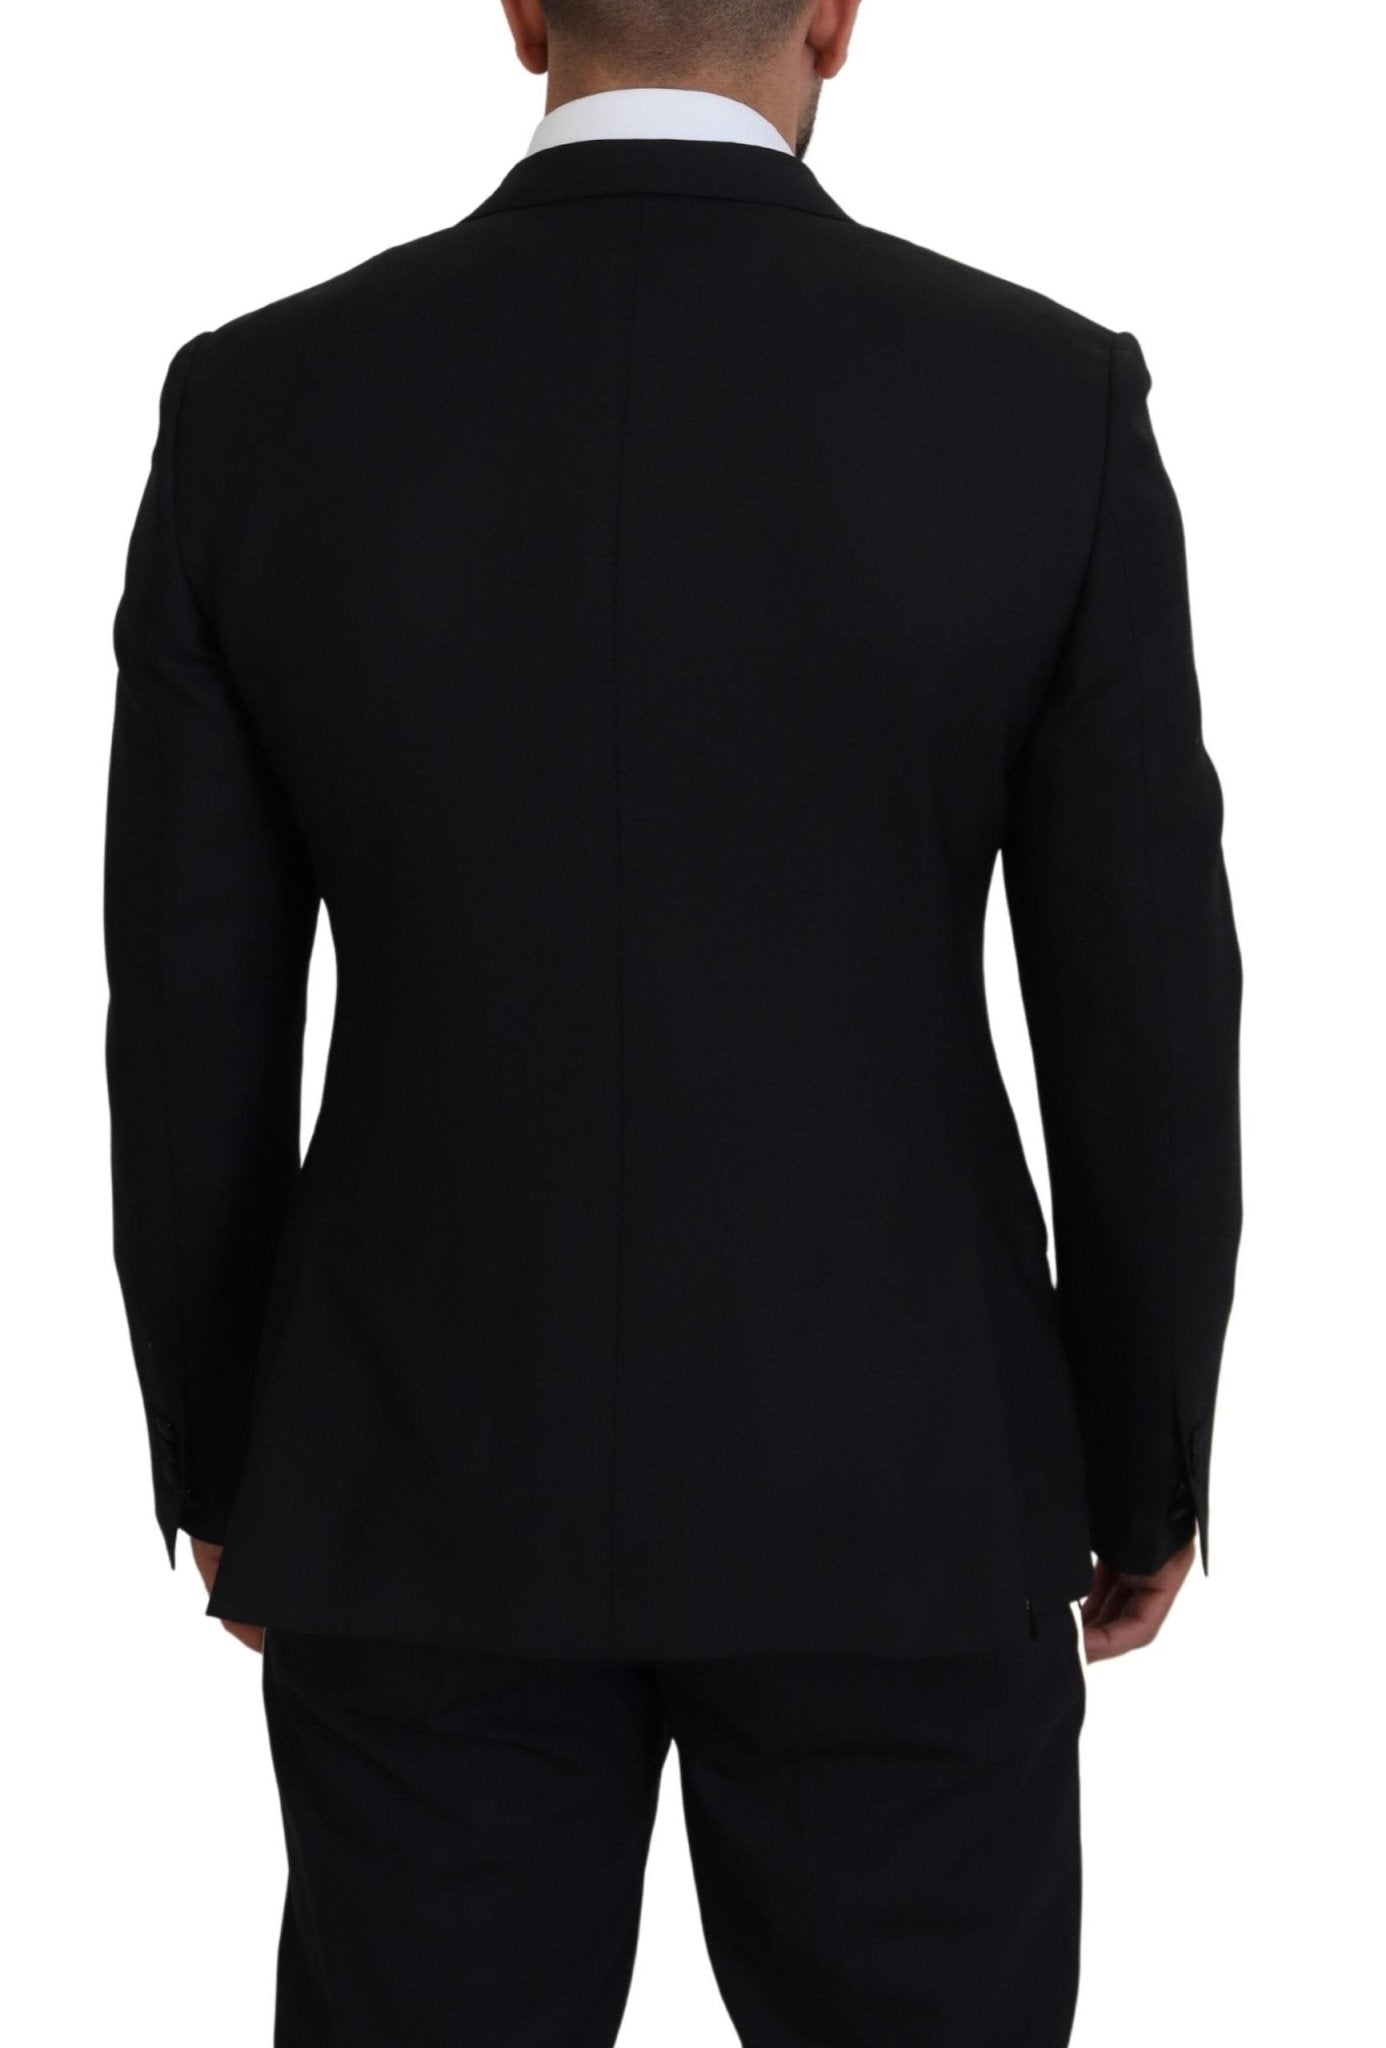 Dolce & Gabbana Black Wool Stretch Slim Fit Jacket  Blazer